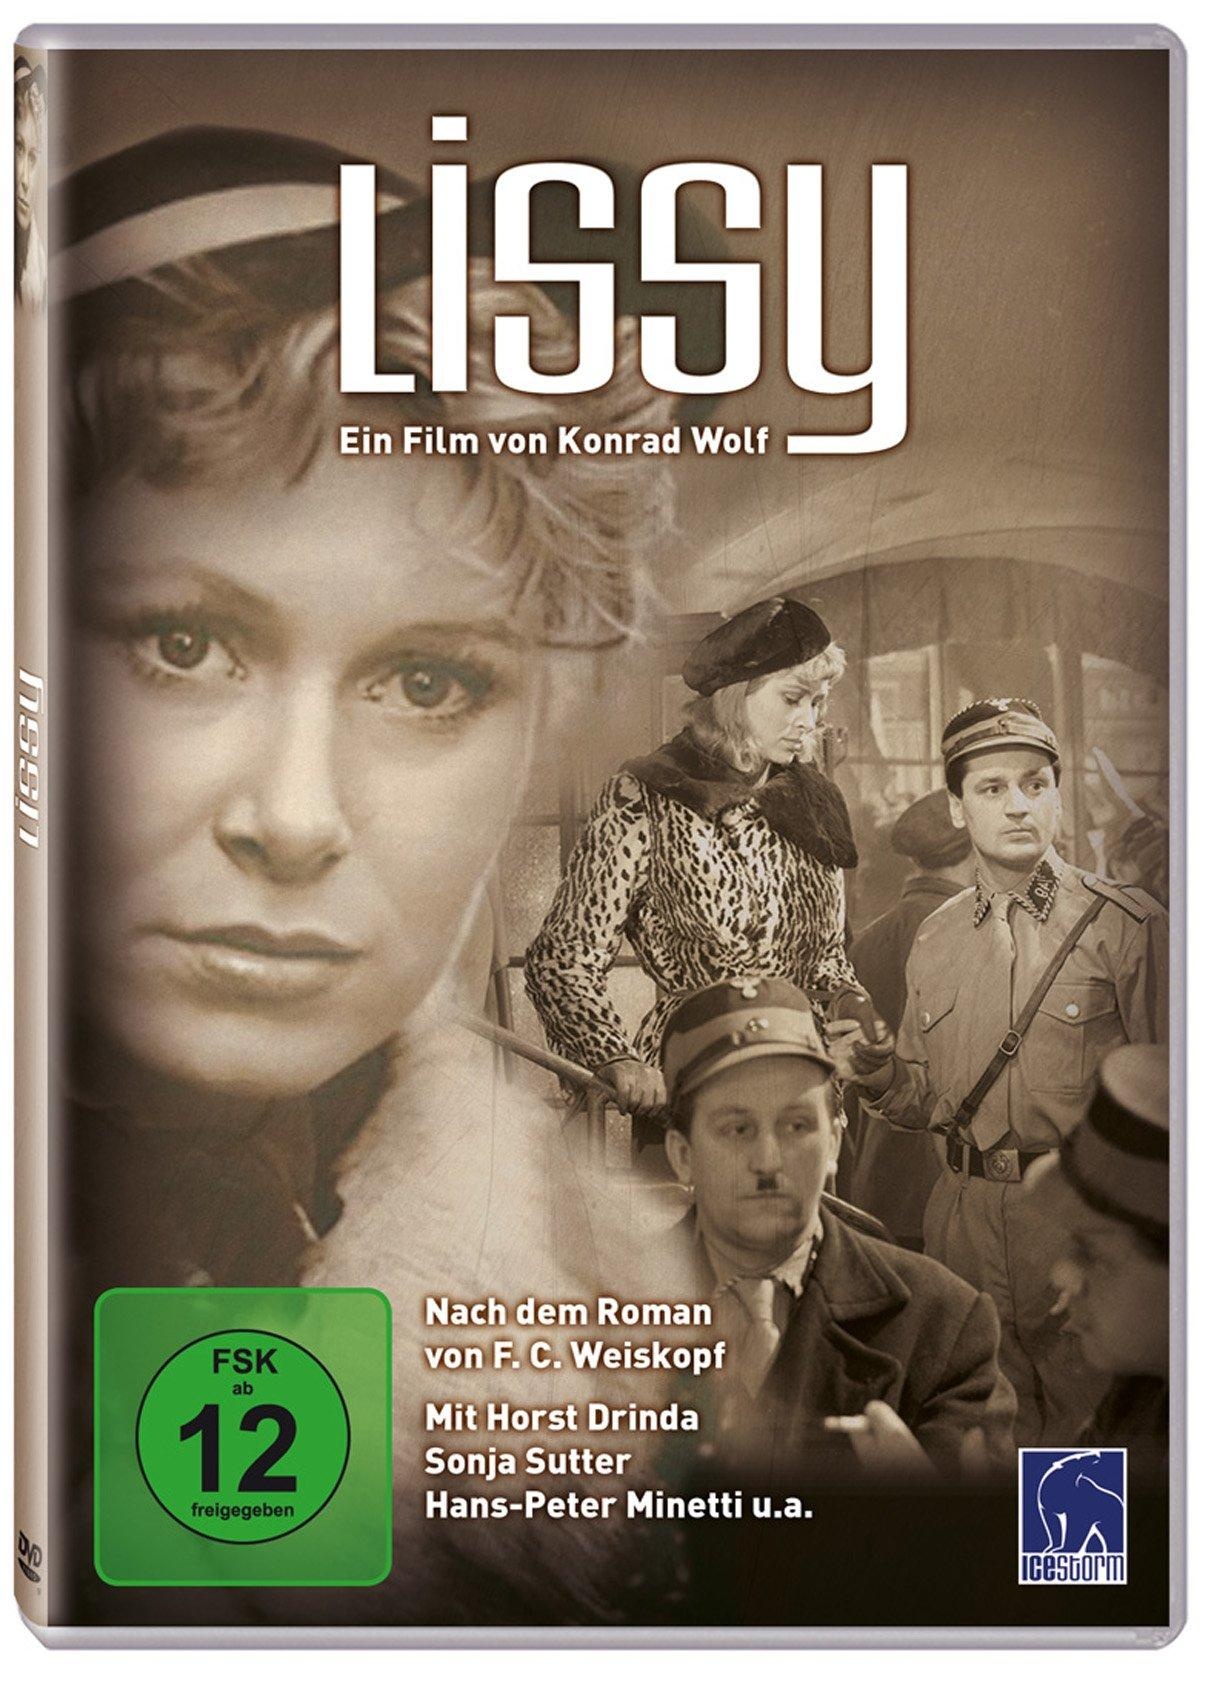 Lissy - Ein Film von Konrad Wolf (Neu differenzbesteuert)